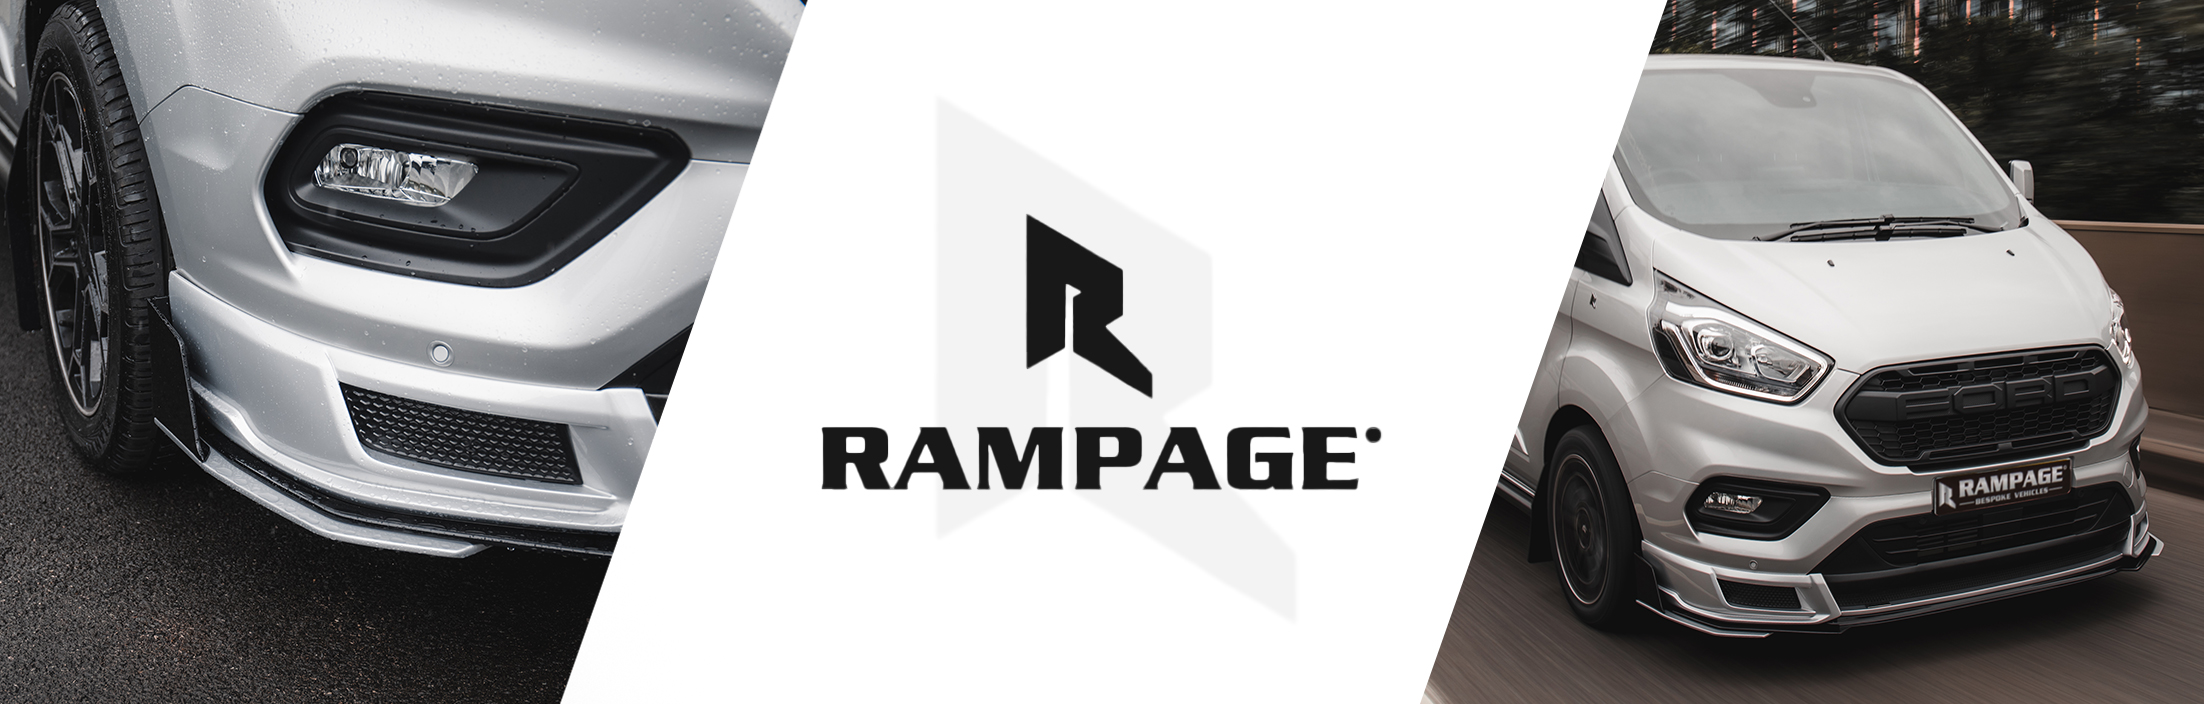 Rampage Custom Front Lower Splitter